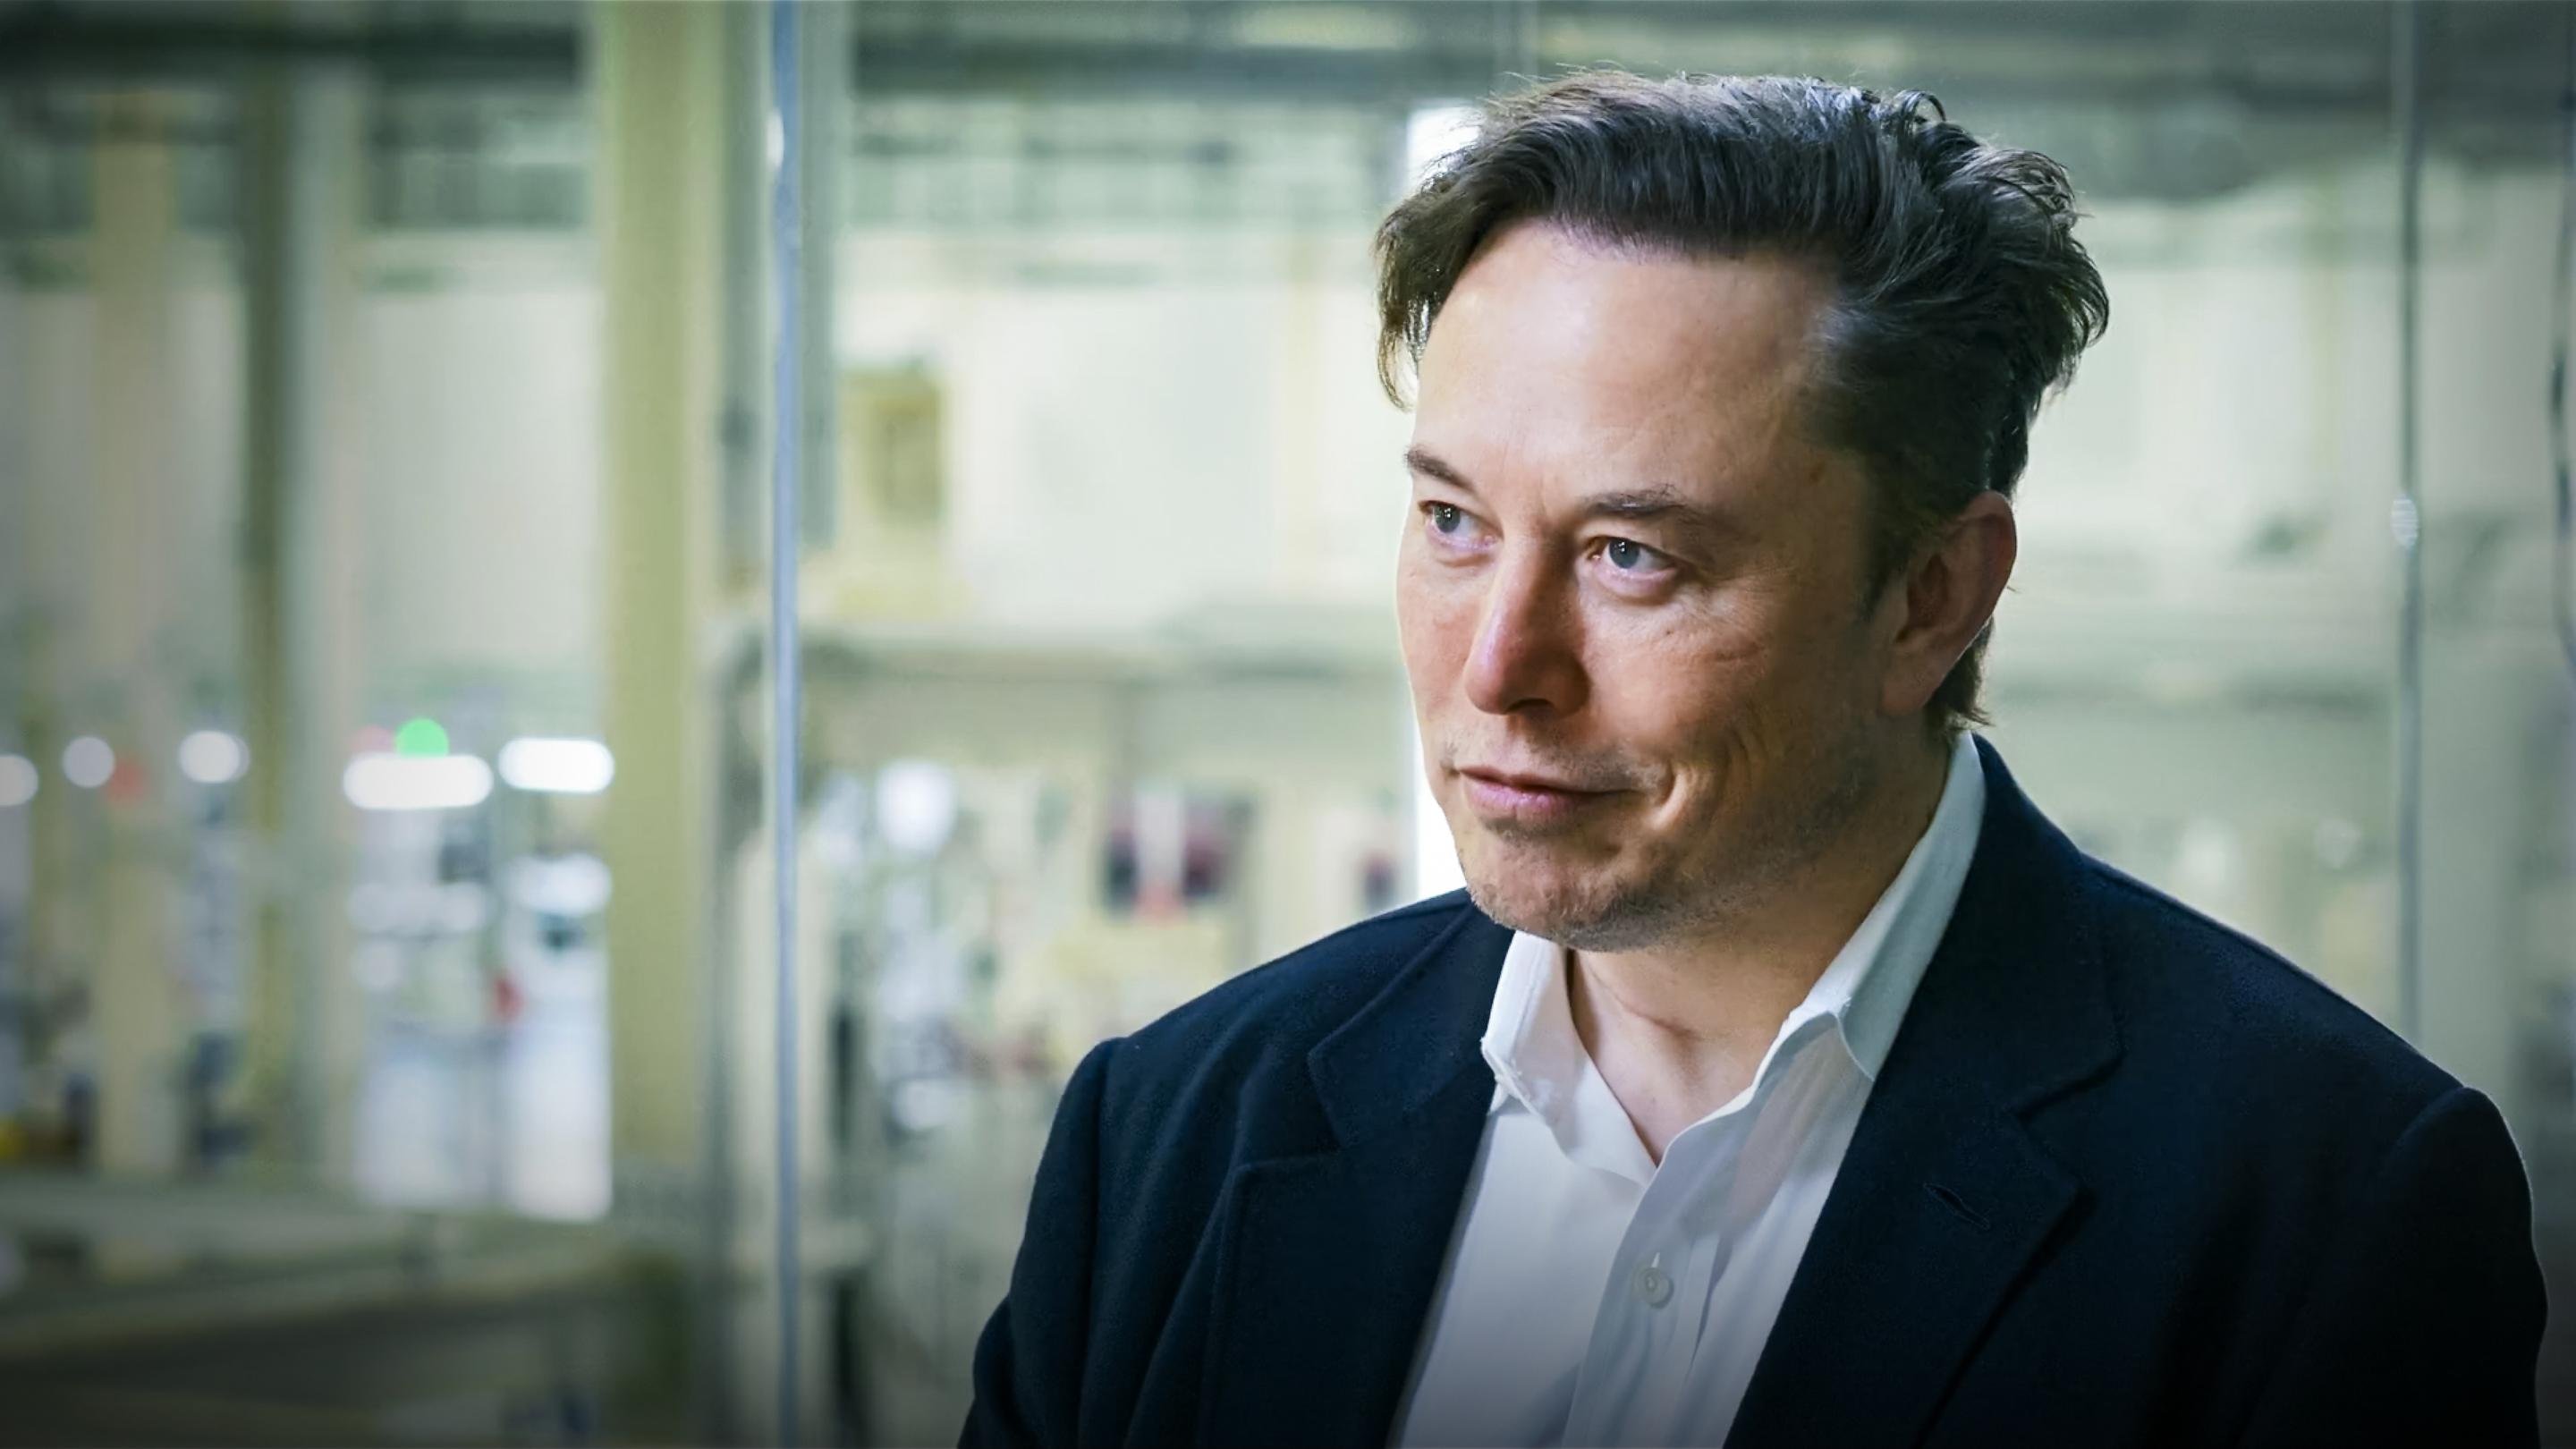 Маск волос. Илон Маск. Илон Маск (Elon Musk). Elon Musk фото. Илон Маск 2016.